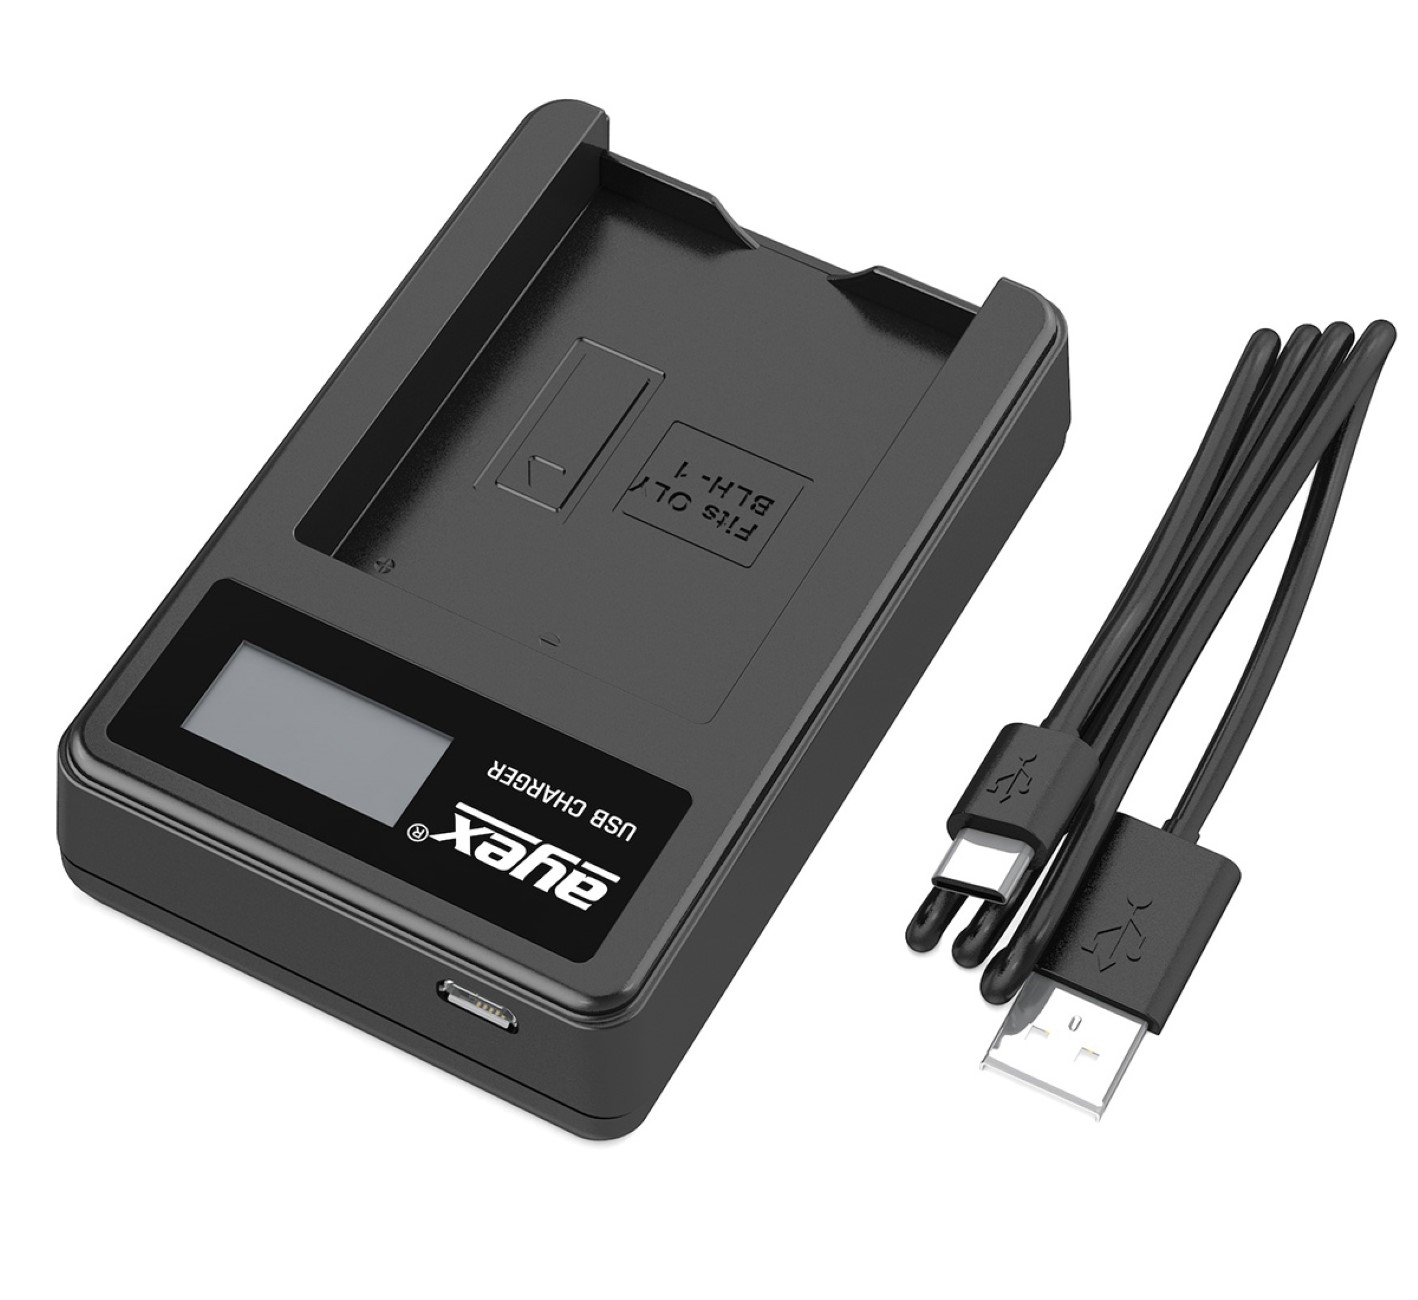 ayex USB Ladegerät für Olympus BLH1 Akku